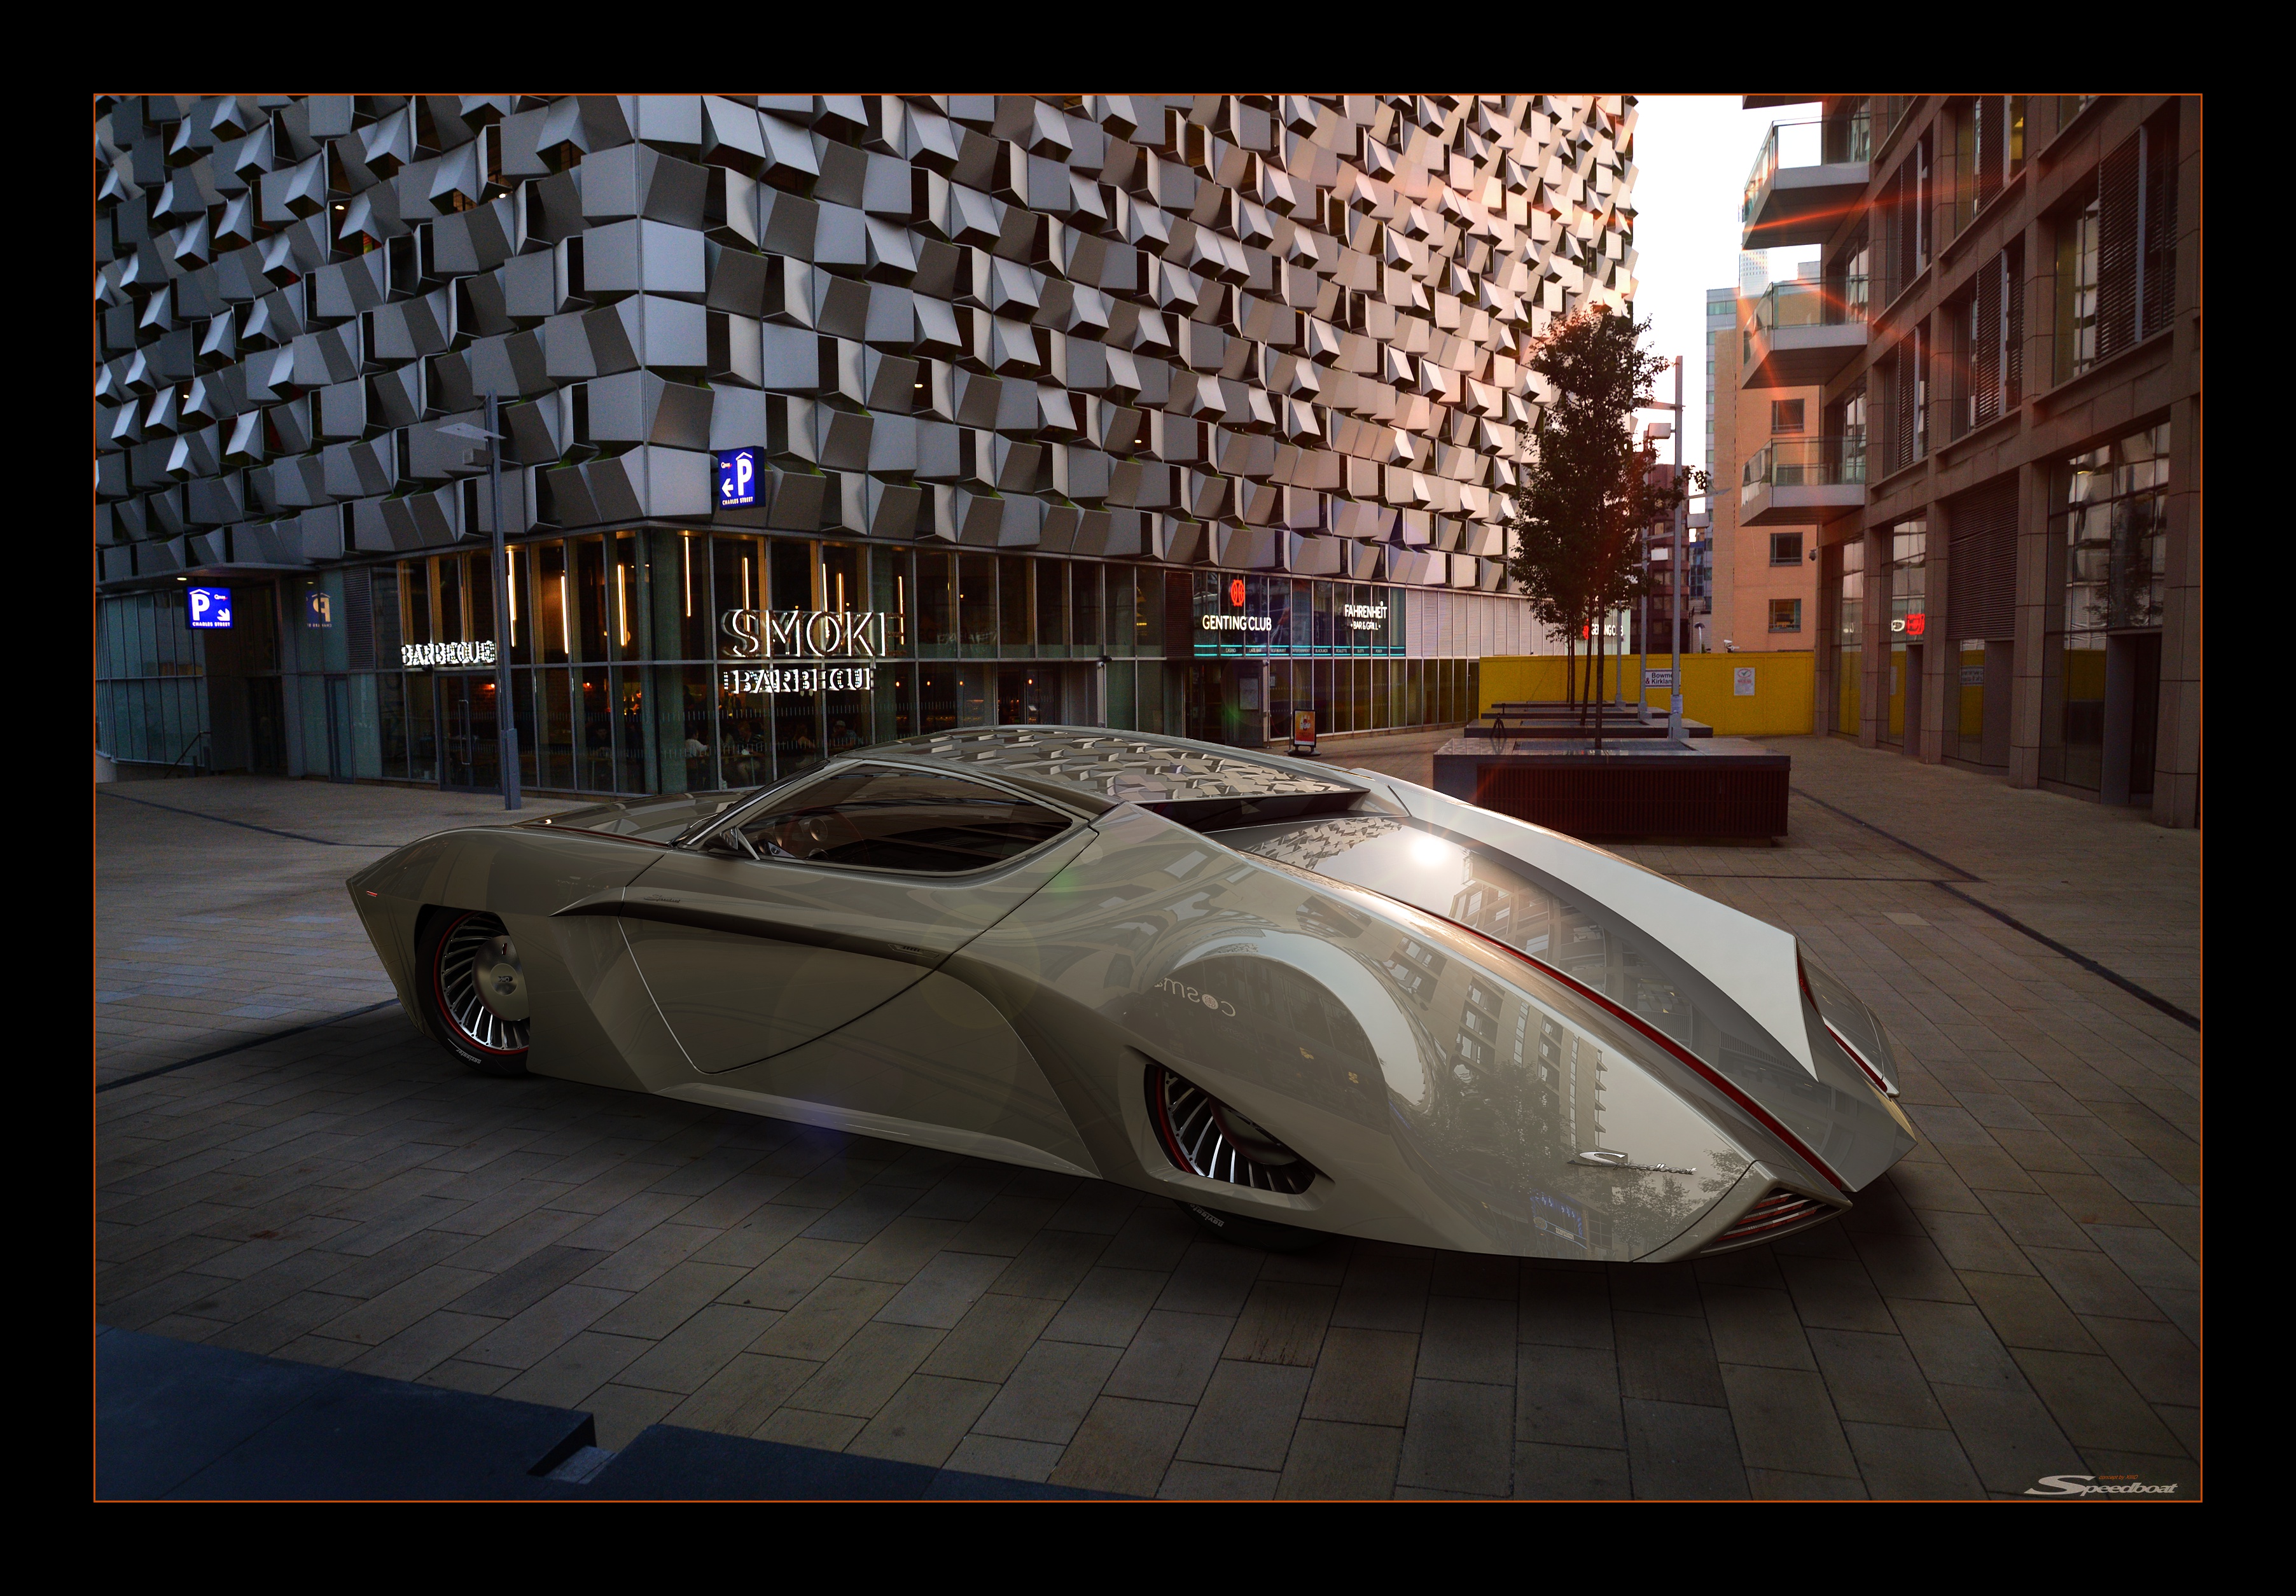 XIIIDSter Speedboat concept @dusk #2